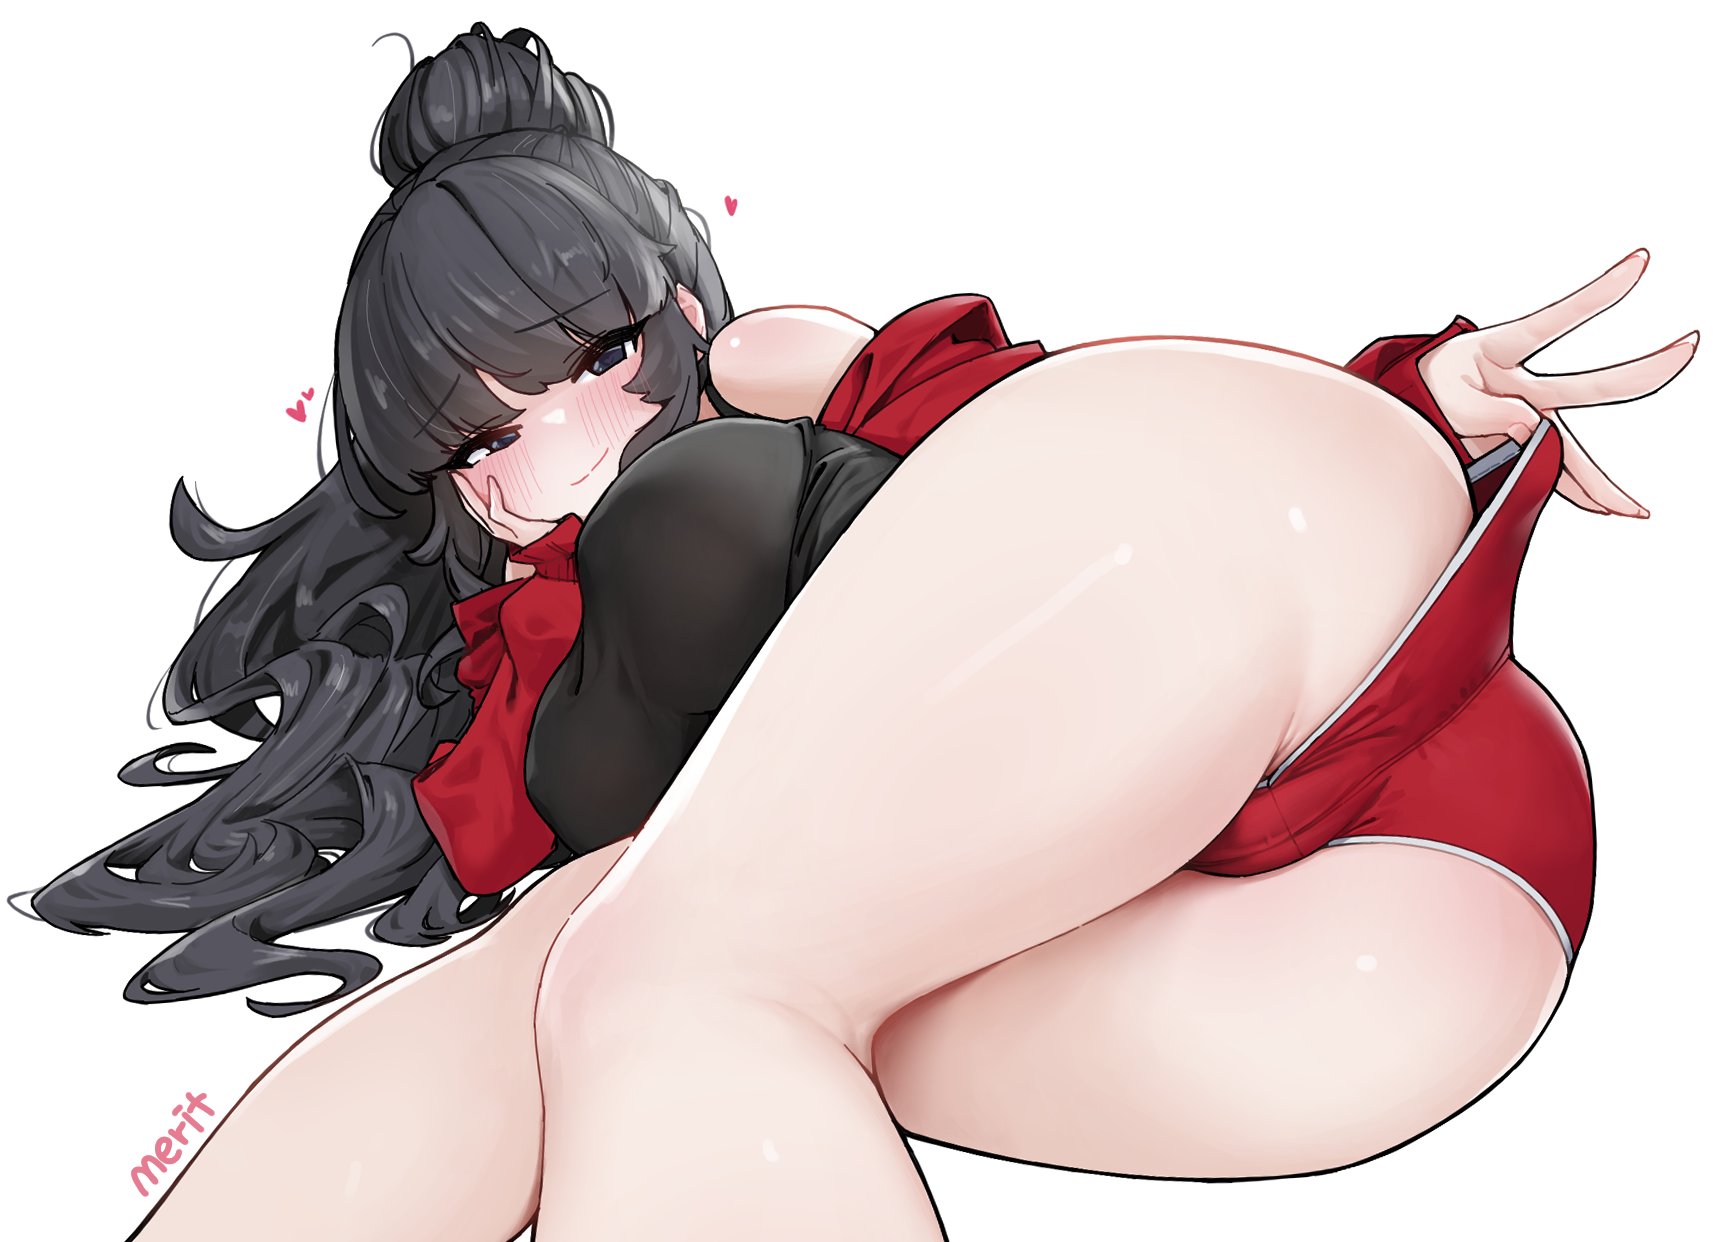 Anime 1730x1242 nujig anime girls ass thighs black hair long hair blunt bangs blushing white background red panties